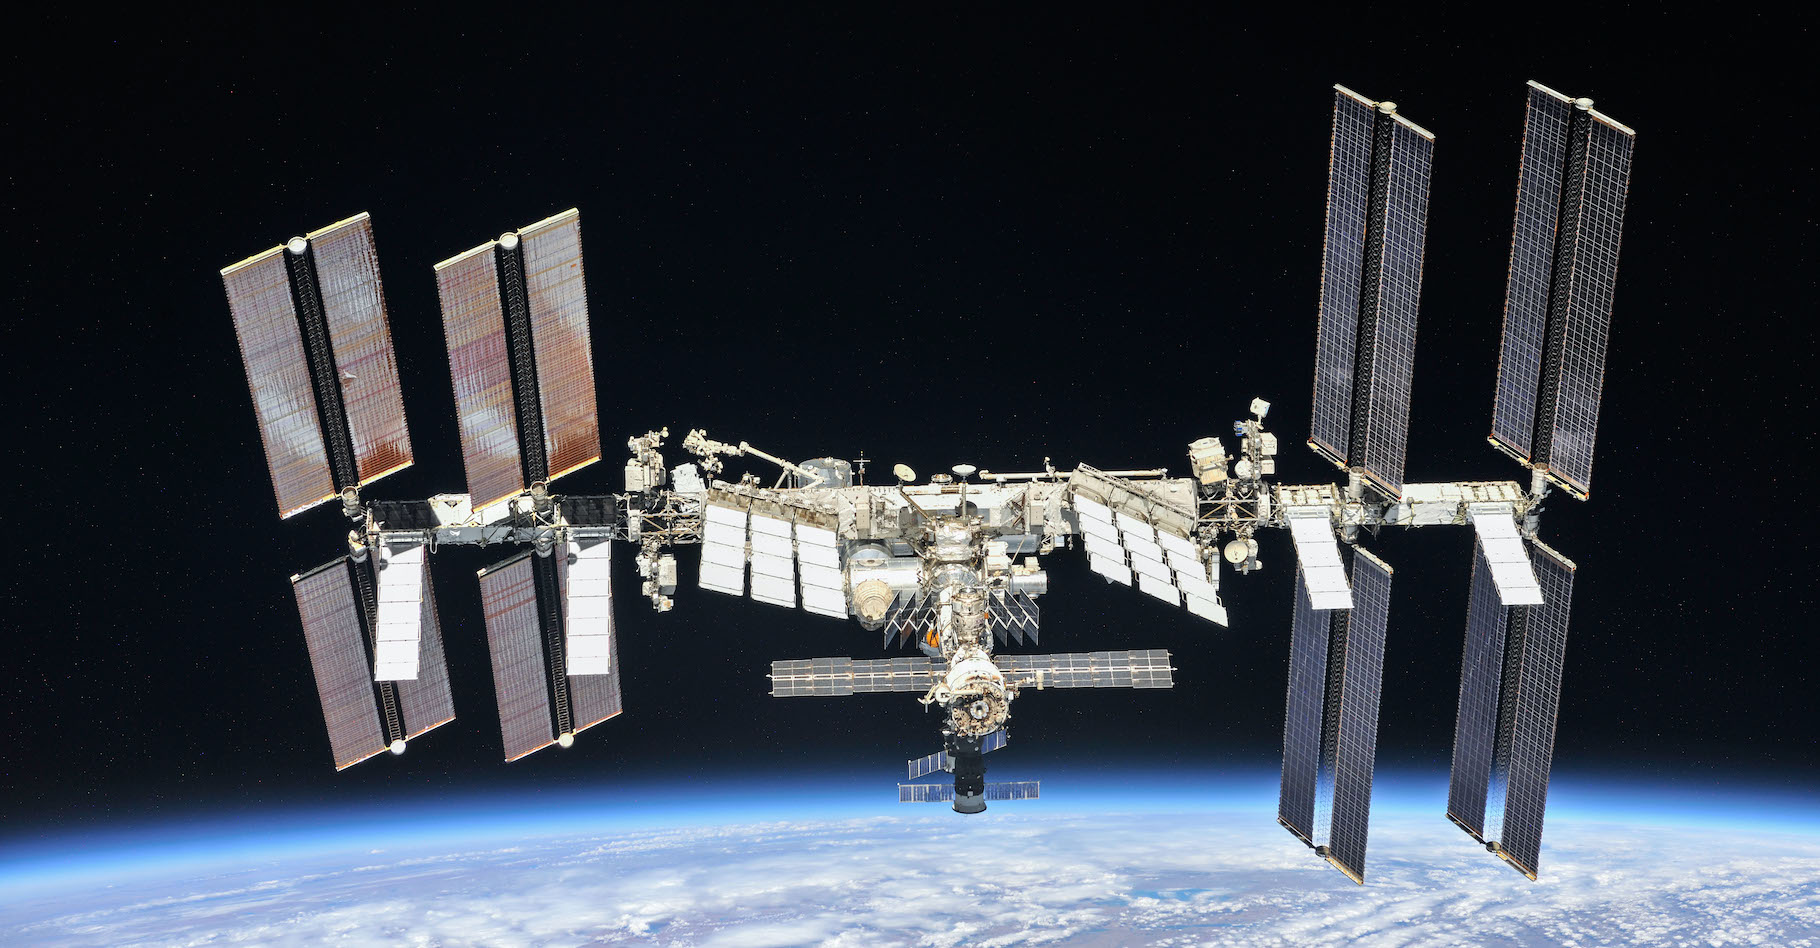 Trois voyageurs de l’espace sont revenus sur Terre aujourd’hui après avoir séjourné plusieurs mois à bord de la Station spatiale internationale. © Nasa, Roscosmos, Wikipedia, Domaine public